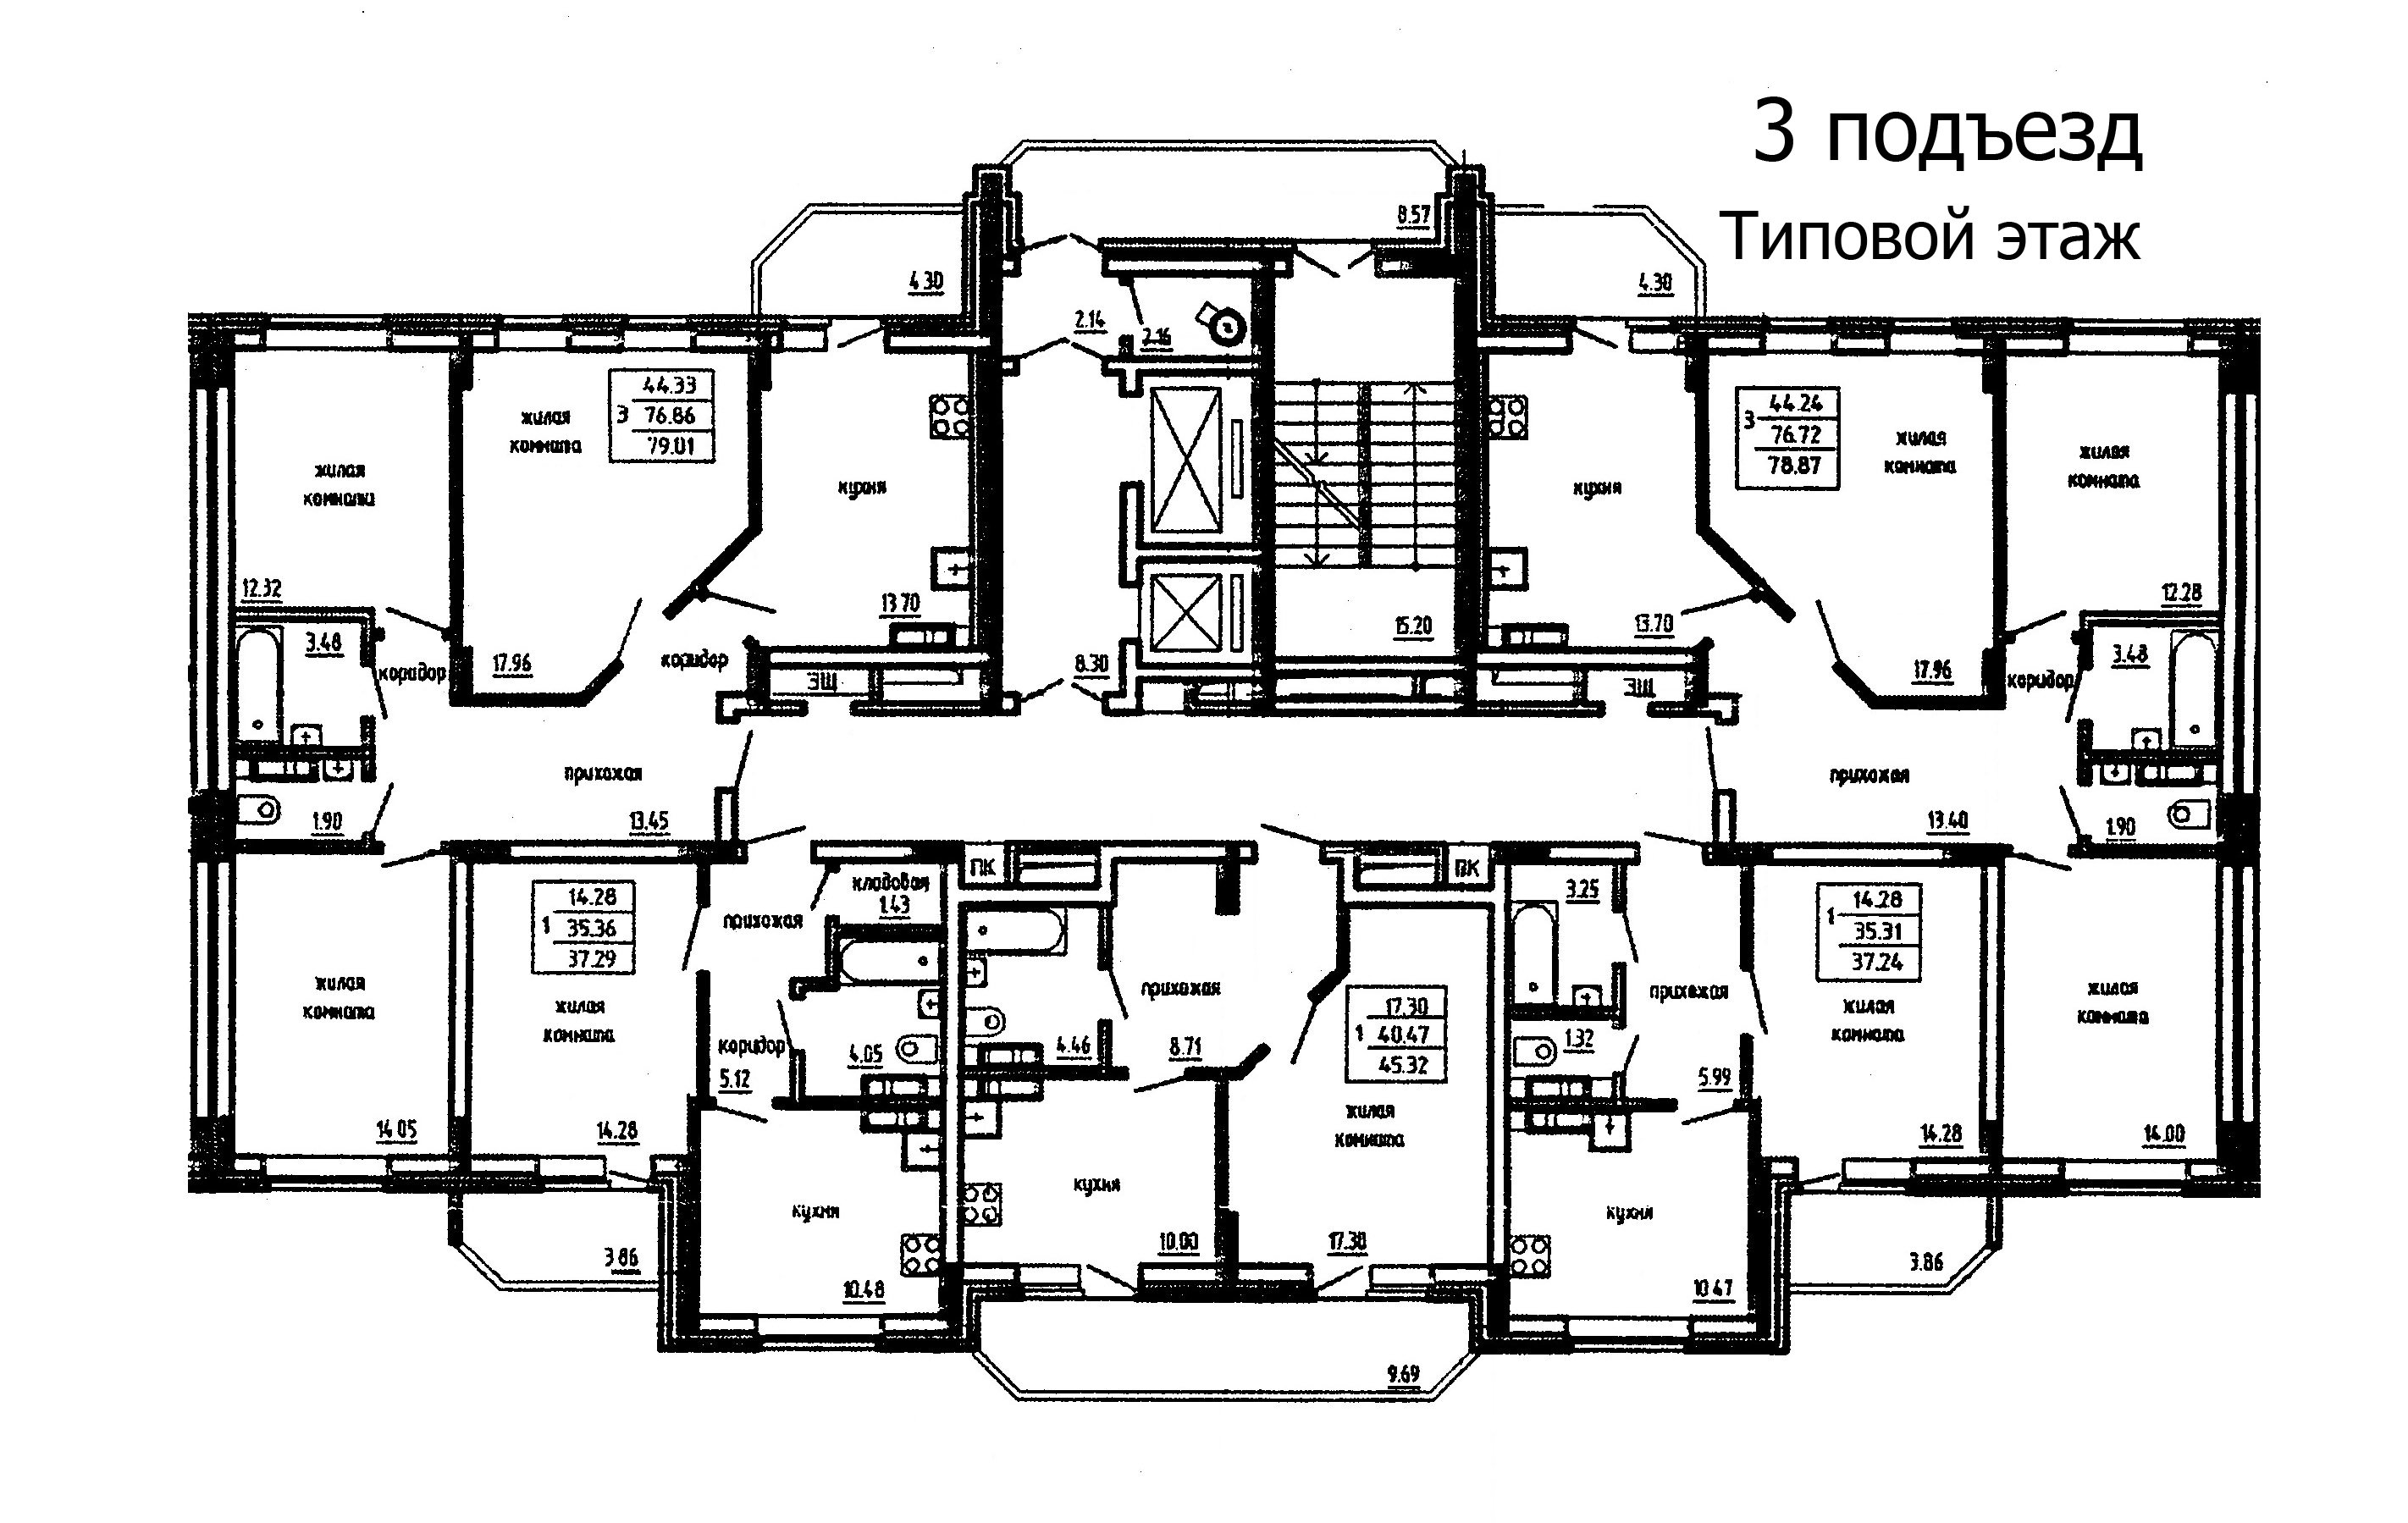 22 1 подъезд. План типового этажа. Типовые планировки квартир. Планировка многоквартирного дома. Планировка подъезда.